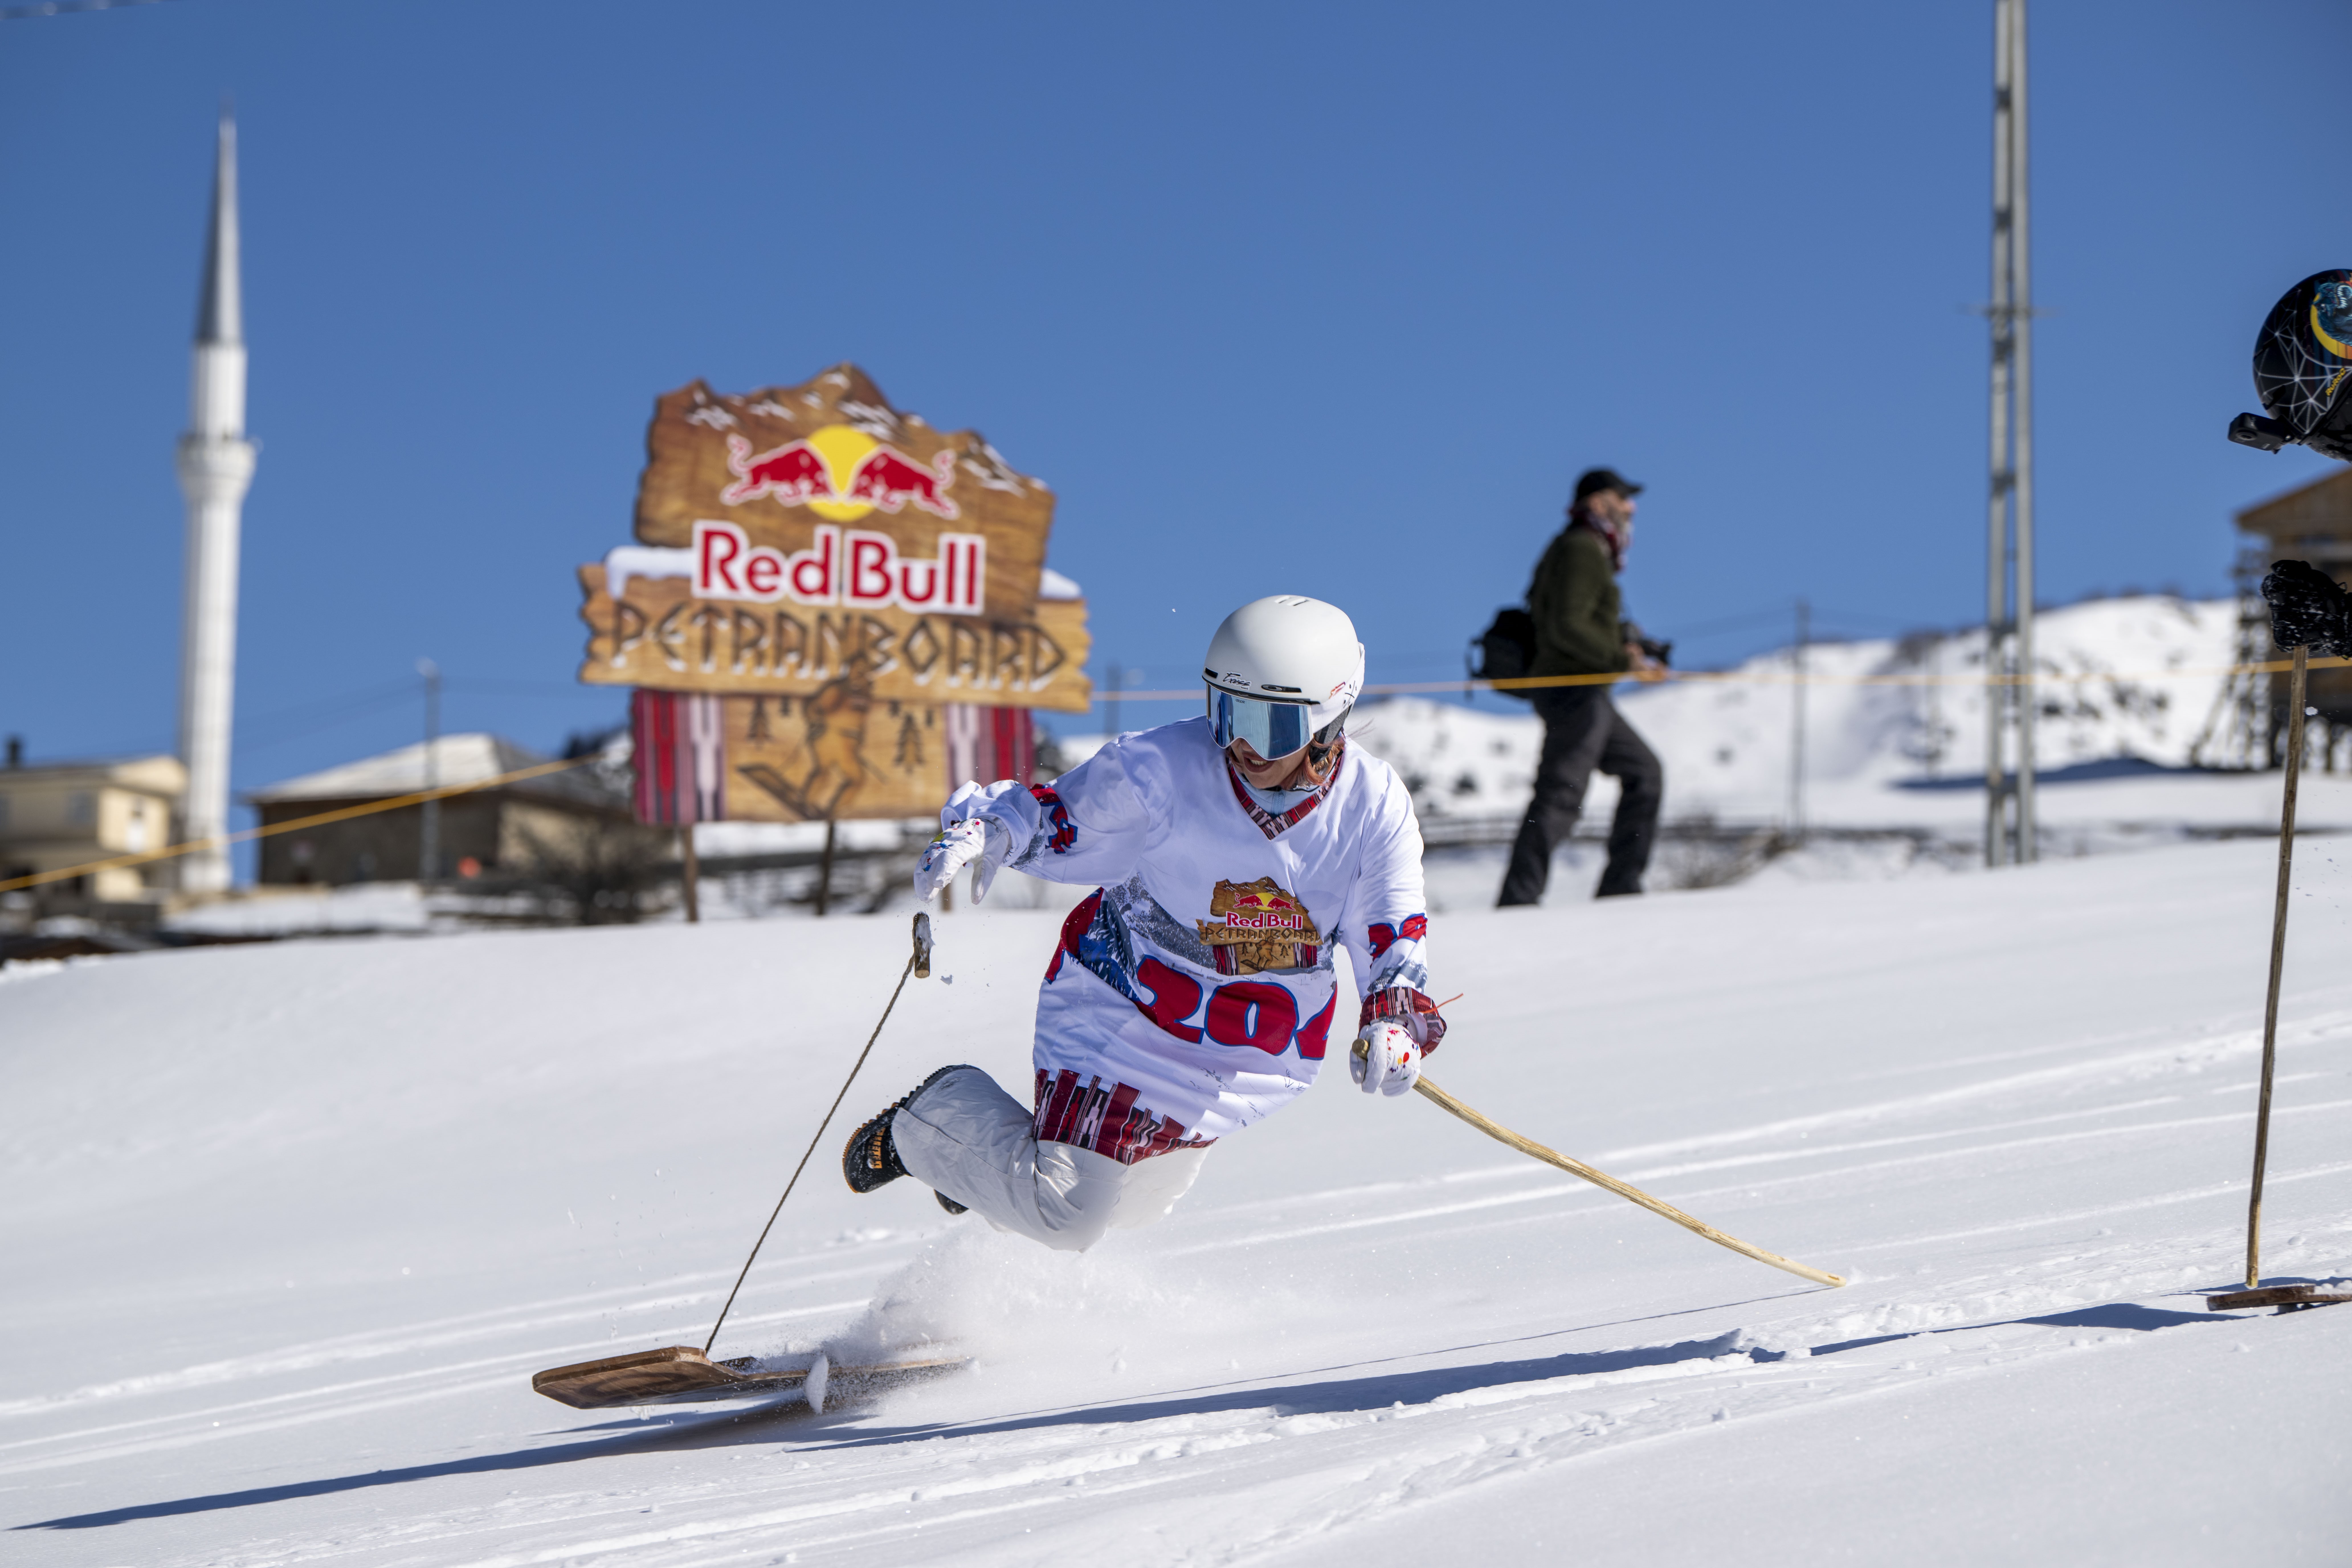 Kayak Sporlarının Atası 'Red Bull Petranboard' Rize’de düzenlendi-1271 etkinliği yapıldı